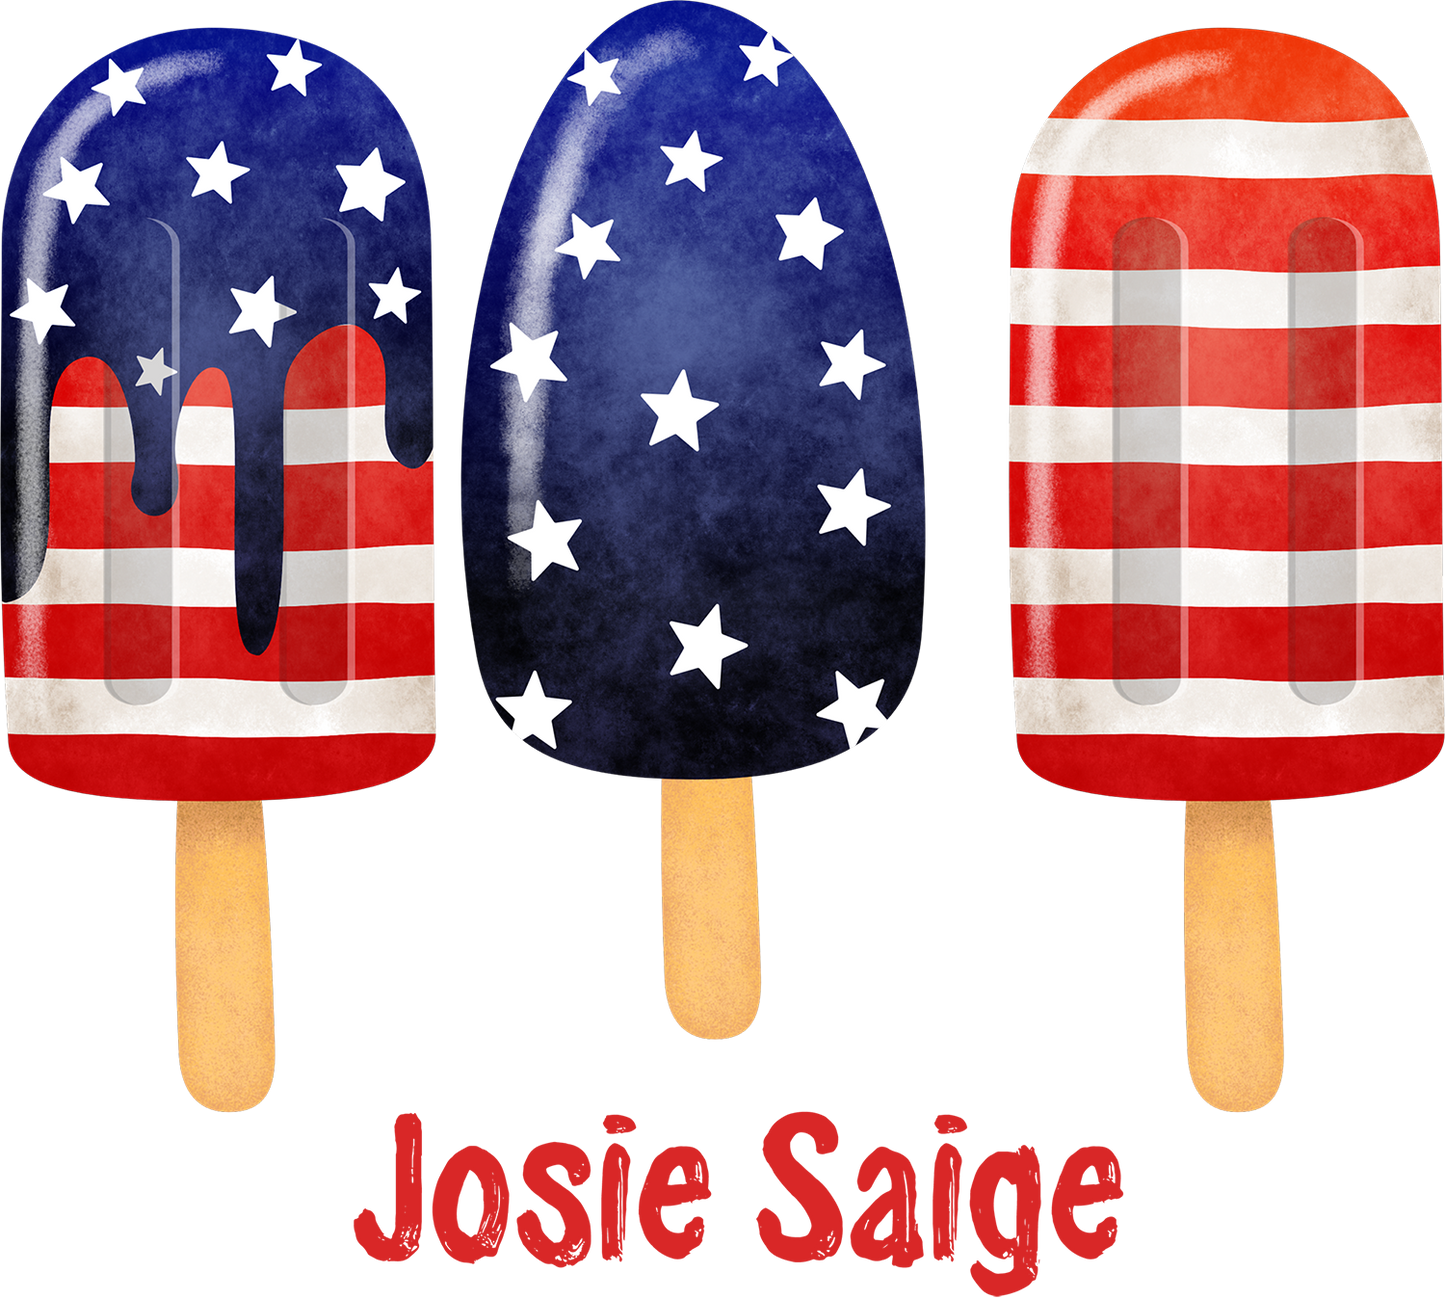 Josie Saige